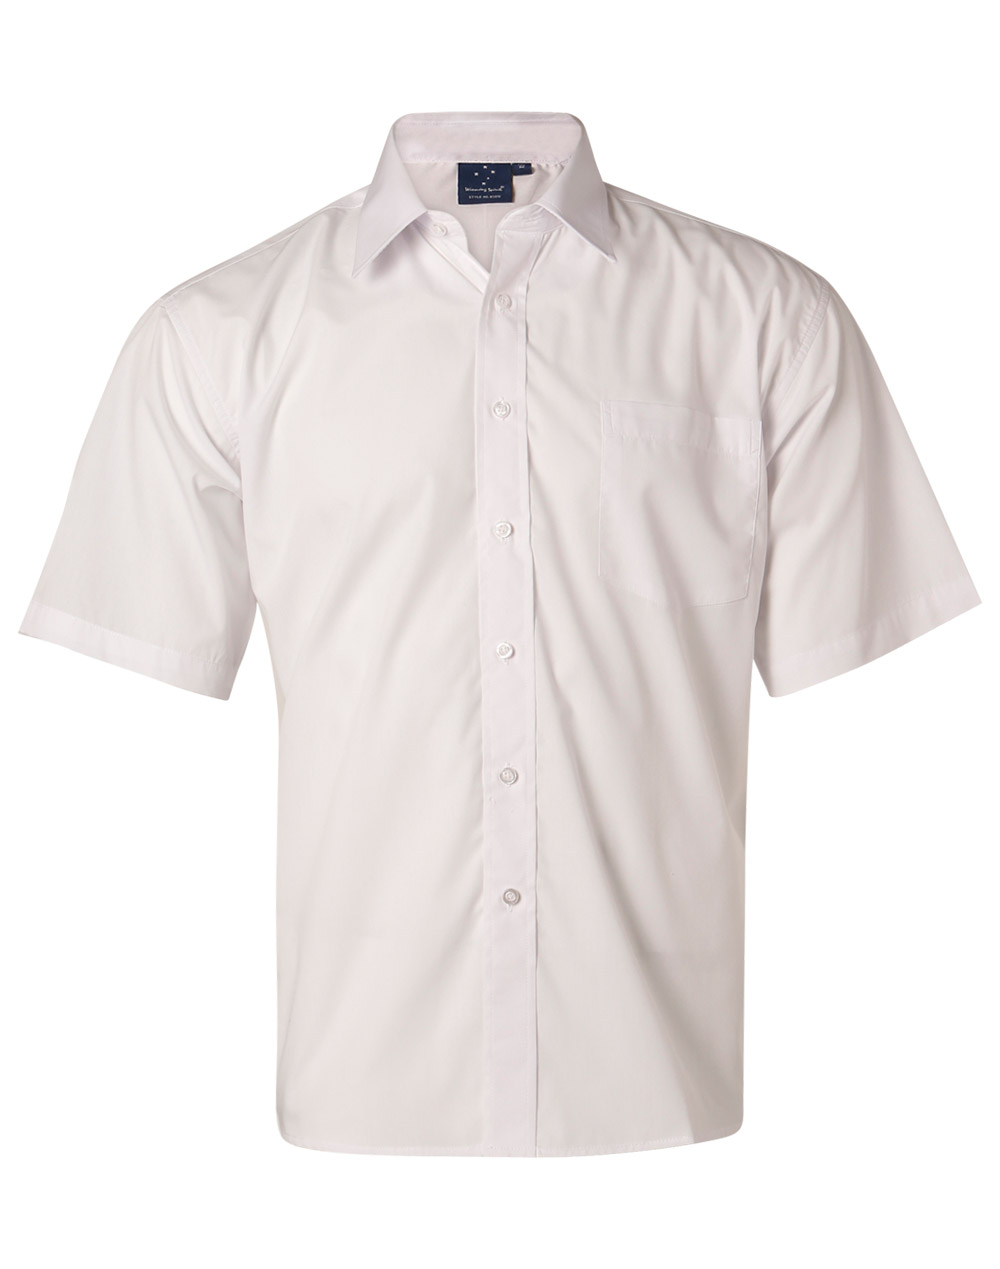 BS01L/BS01S Men’s Poplin Short Sleeve Business Shirt